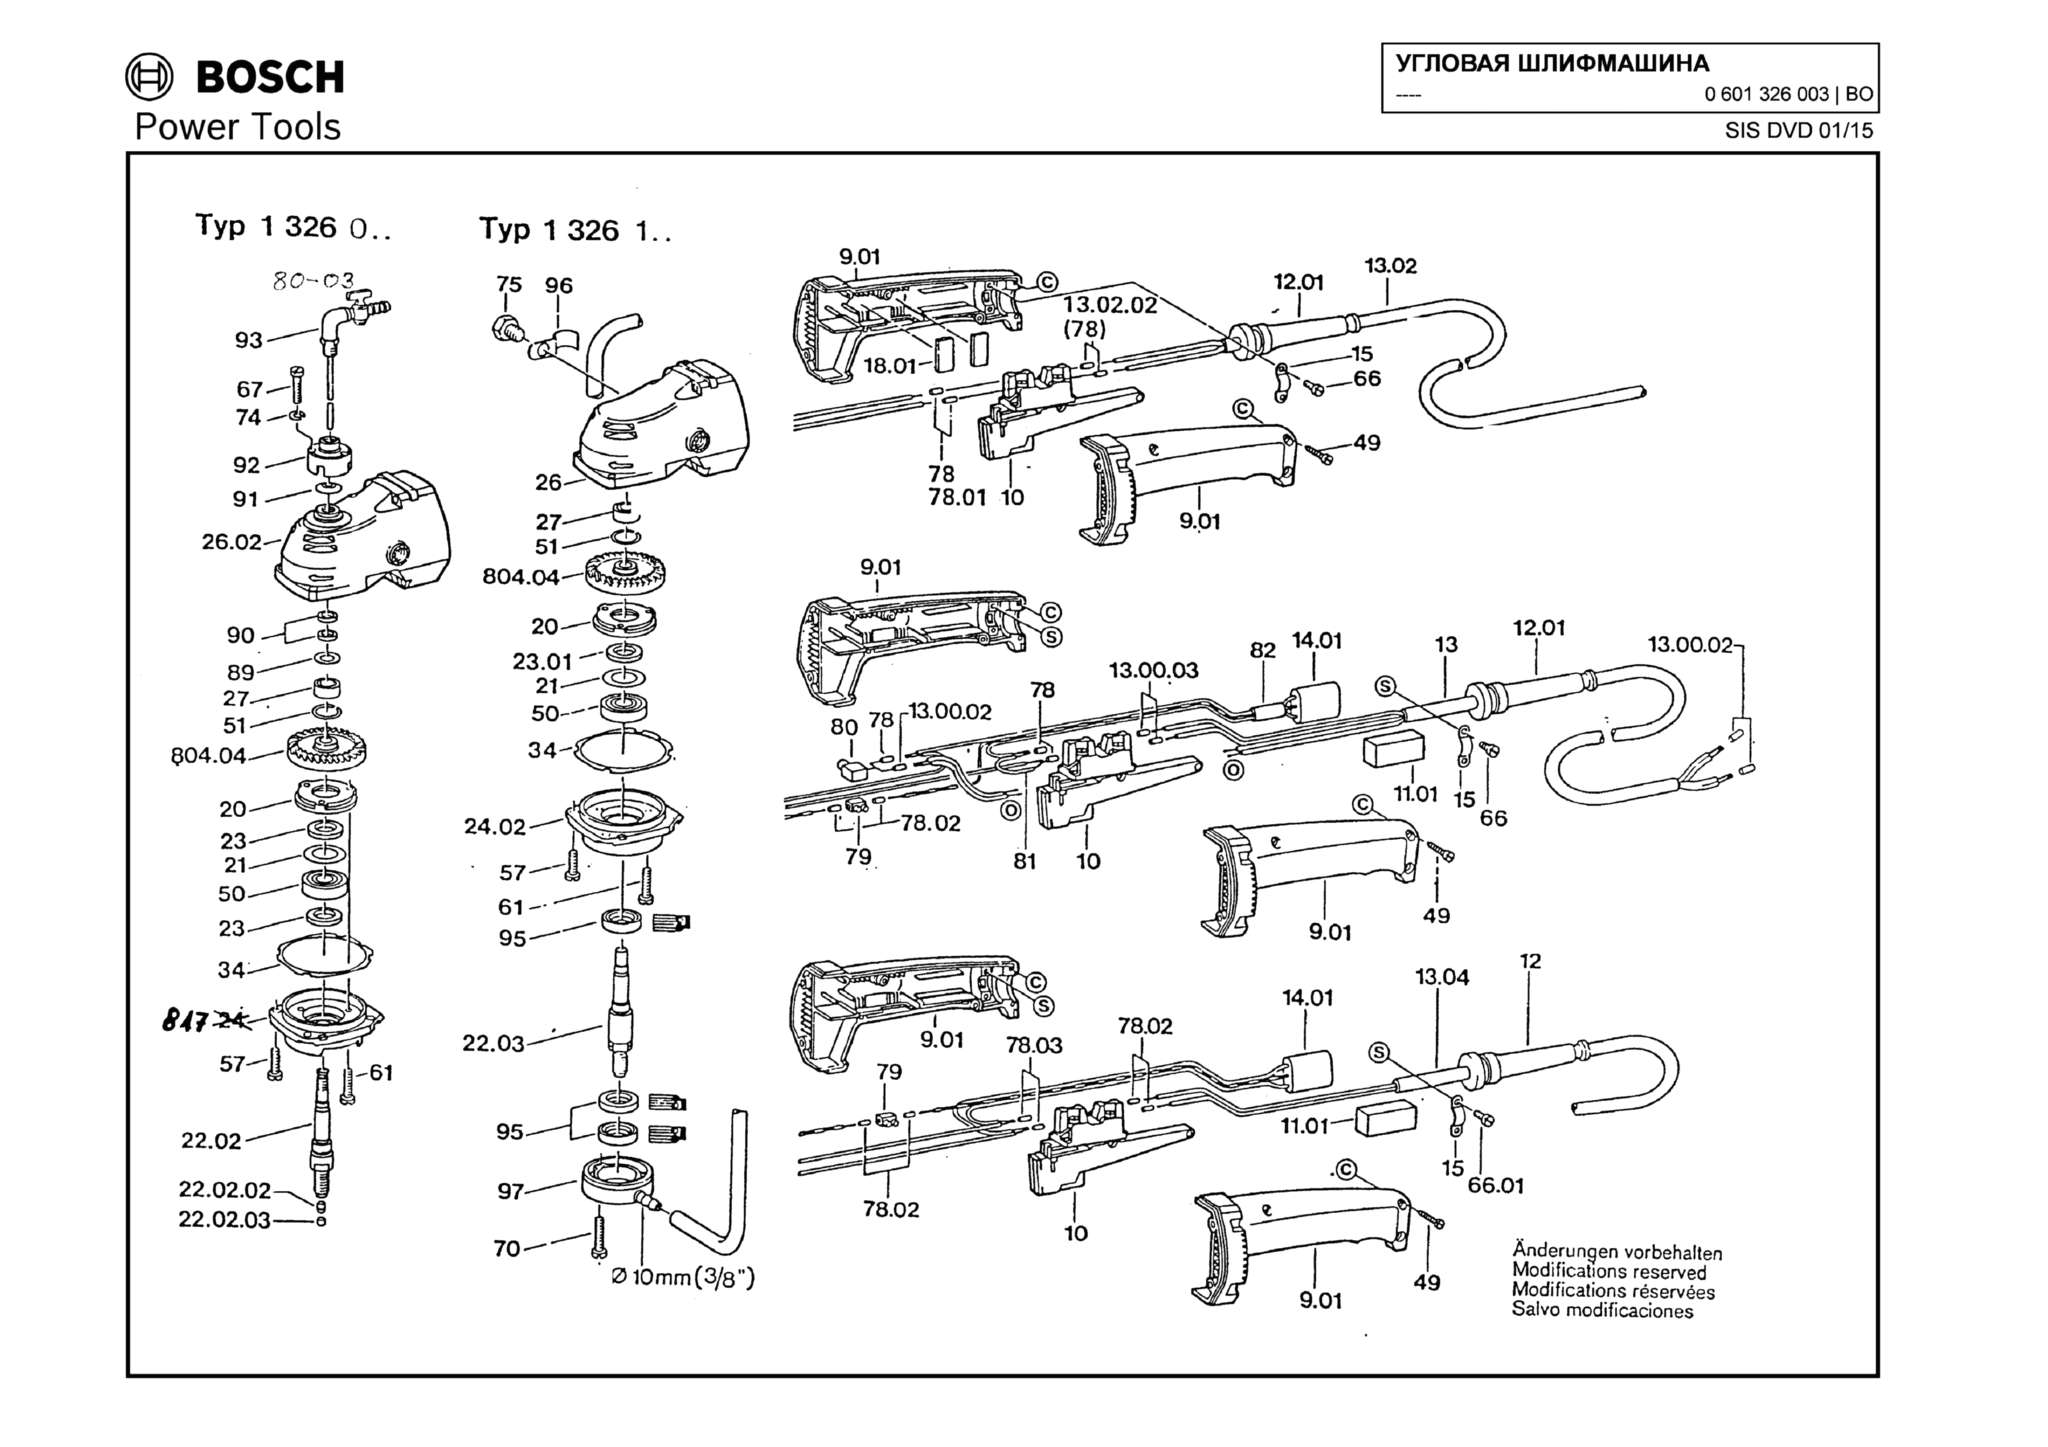 Запчасти, схема и деталировка Bosch (ТИП 0601326003)